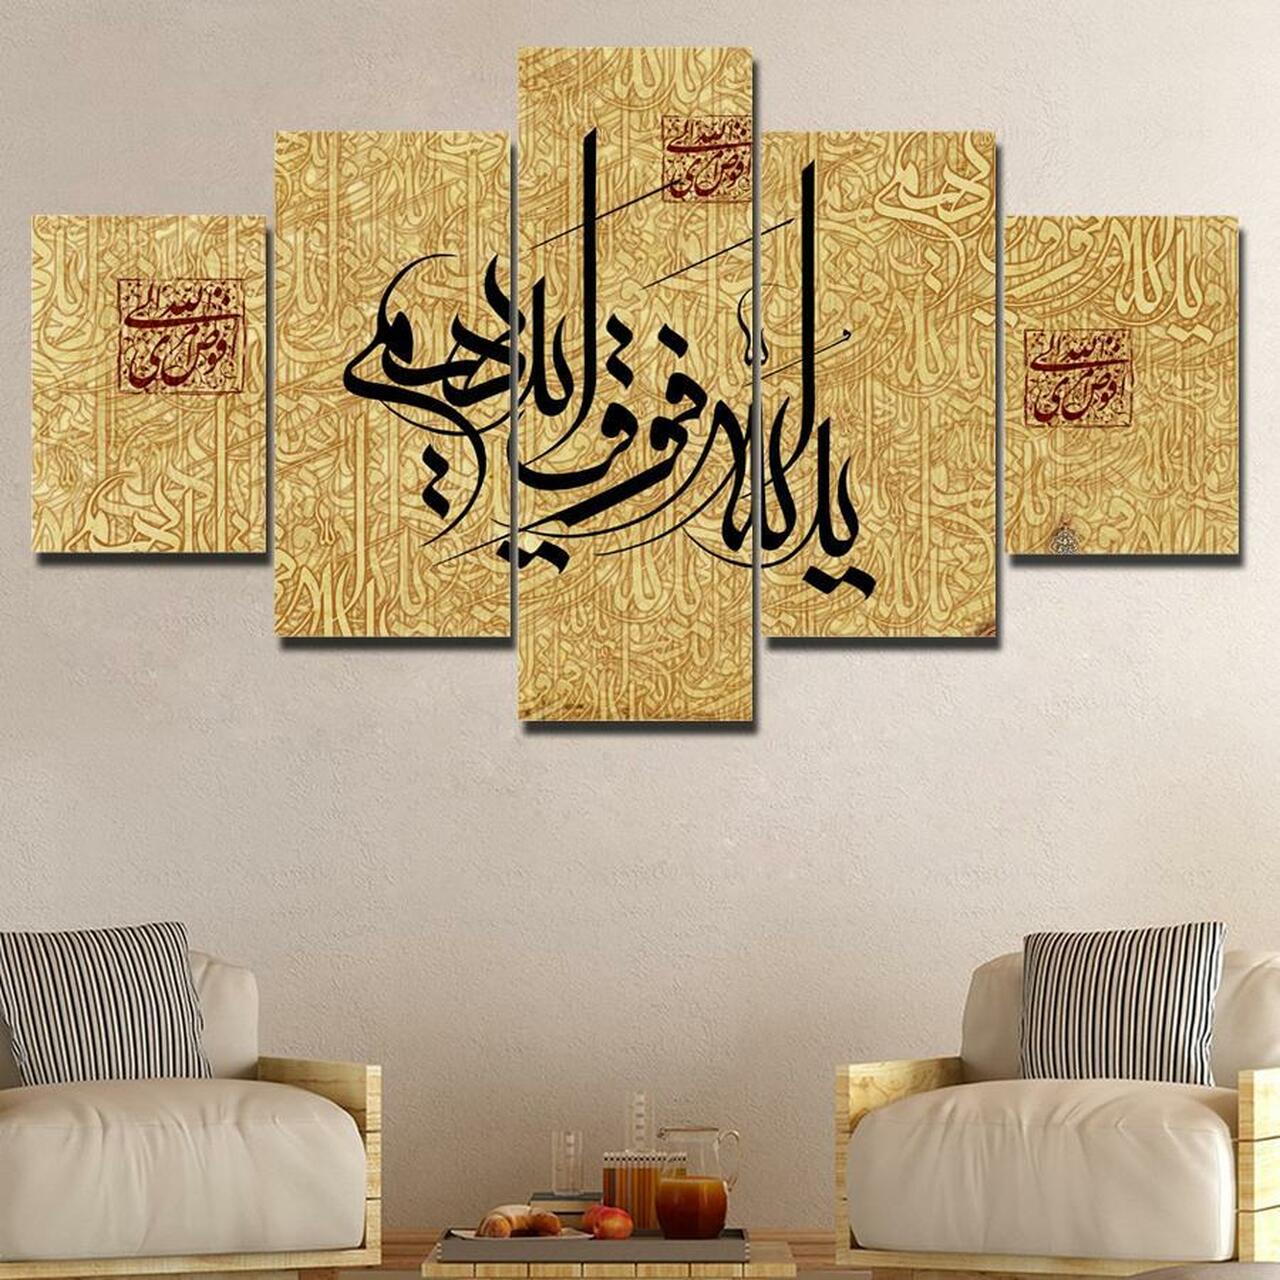 islamic art 5 5 pices peinture sur toile impression sur toile toile art pour la dcoration intrieureob8a2